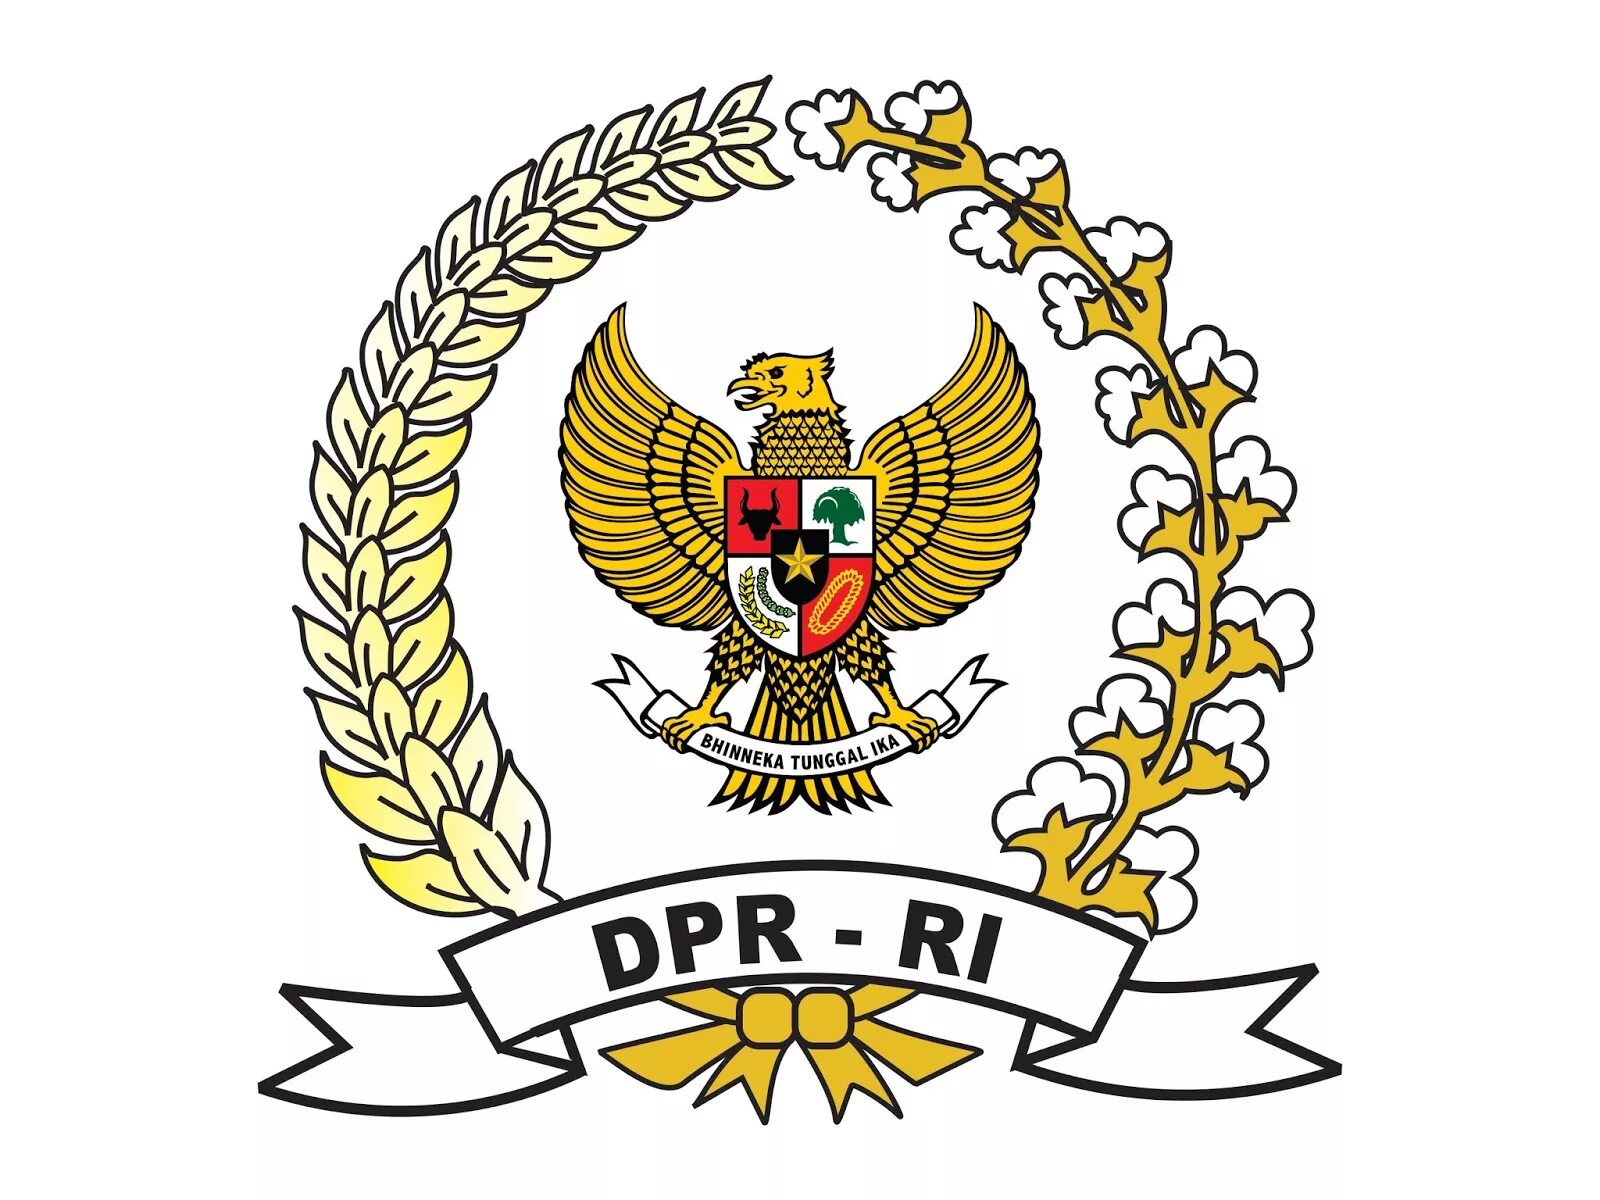 DPR флаг. DPR lan лого. Donetsk people's Republic герб вектор. Национальный совет логотип. Dpr это